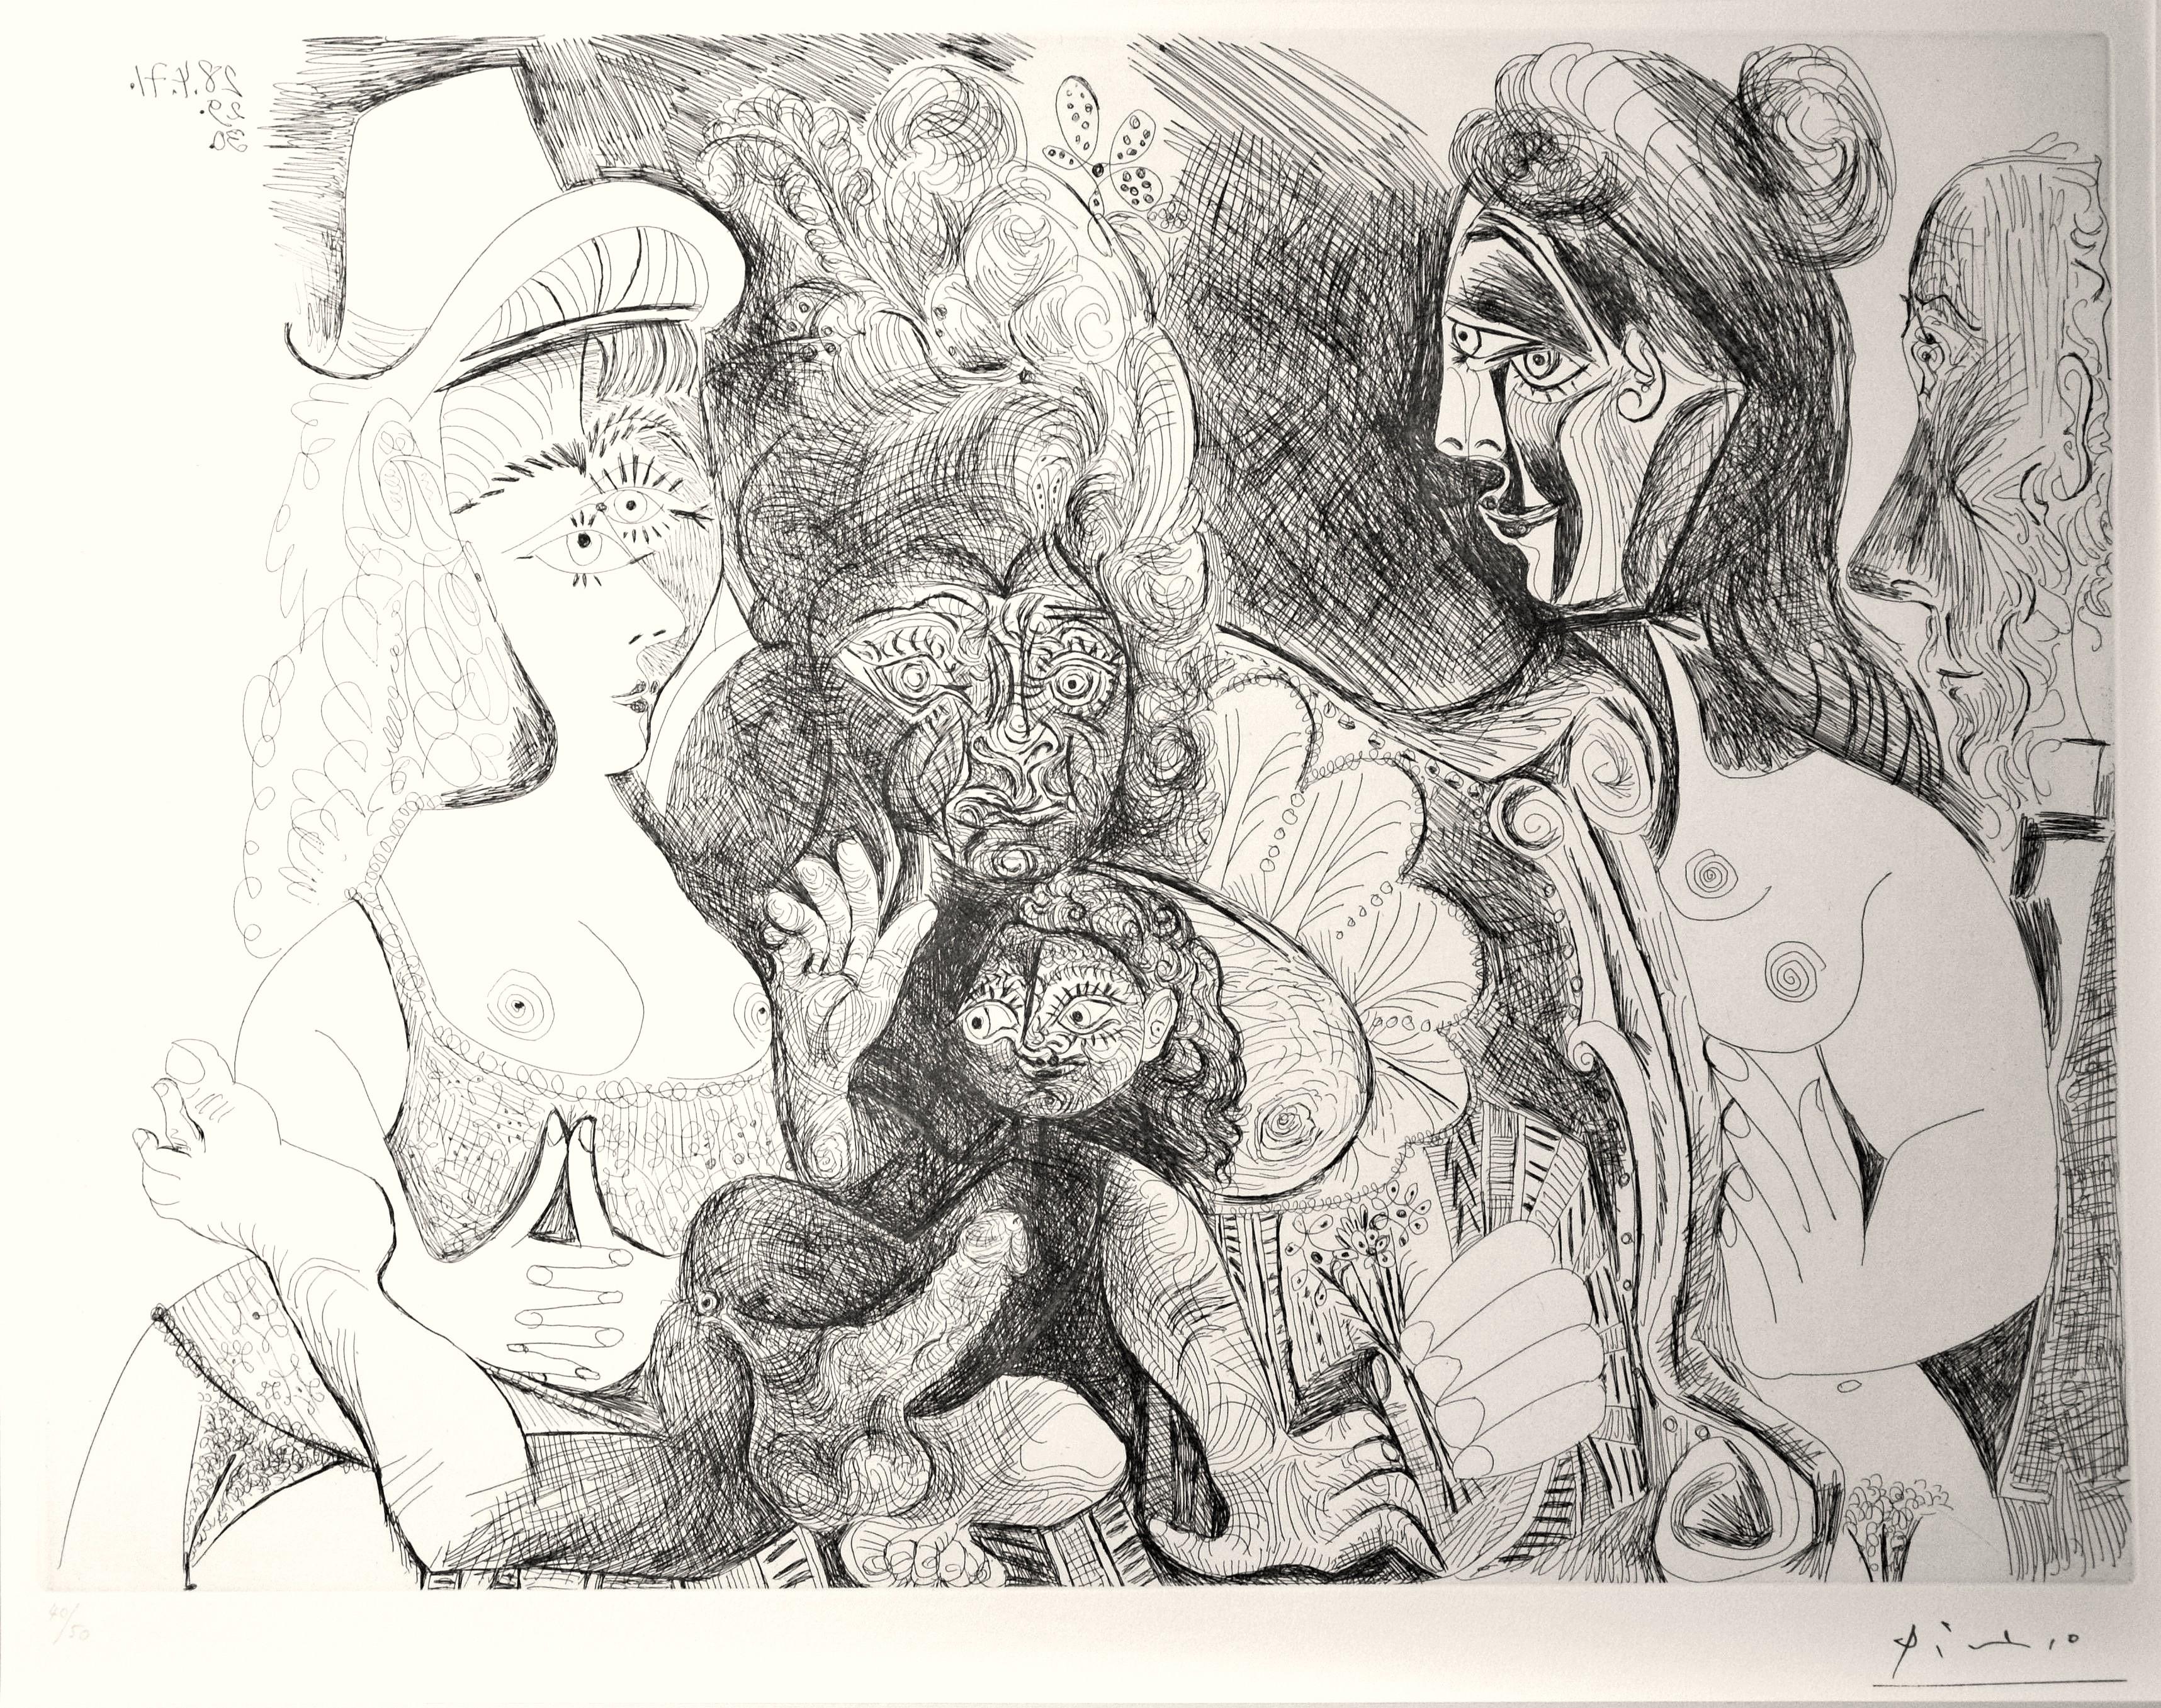 Cette gravure de Picasso est une édition de 50 tirages, planche 115 de la "Série 156". Signature estampillée telle qu'elle a été émise.

N° 40 de l'édition de 50.

Épreuve originale, impression parfaite sur vélin blanc, très fraîche et avec feuille